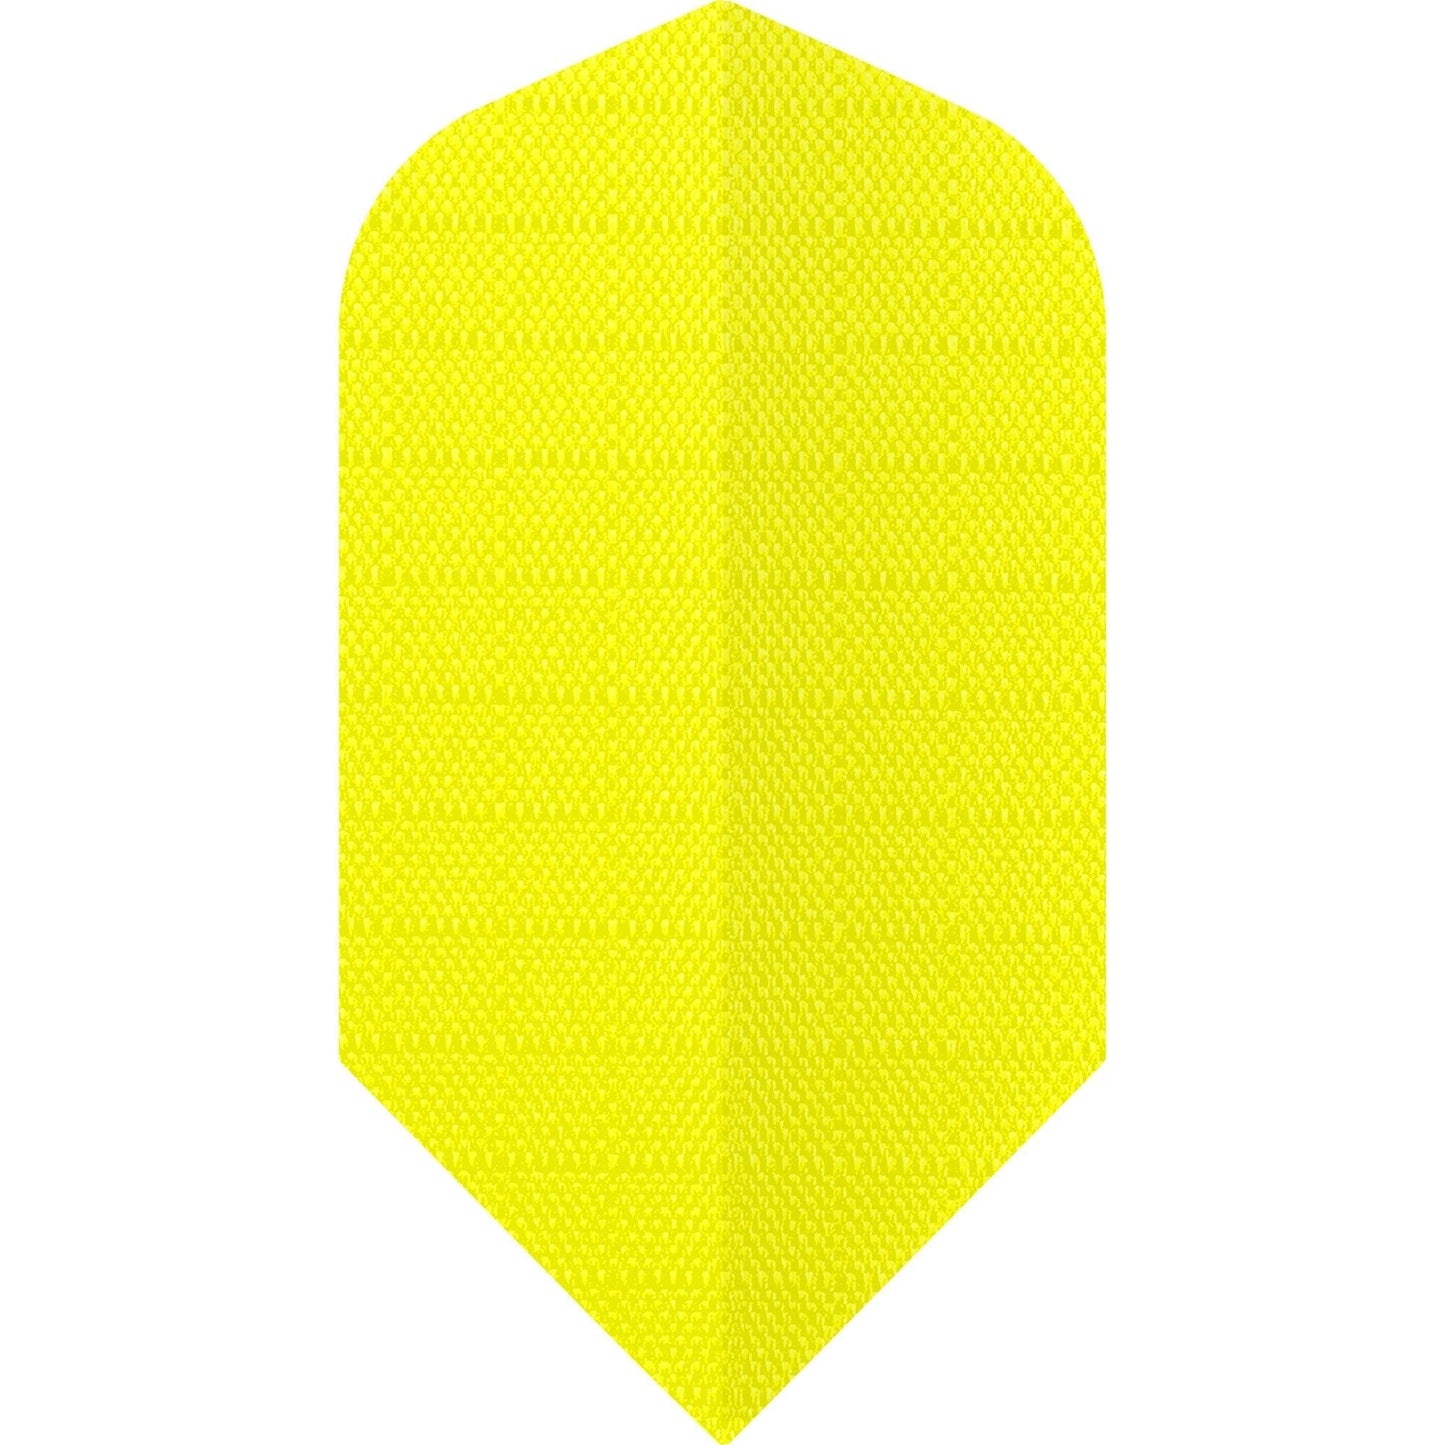 *Designa Dart Flights - Fabric Rip Stop Nylon - Longlife - Slim Fluro Yellow